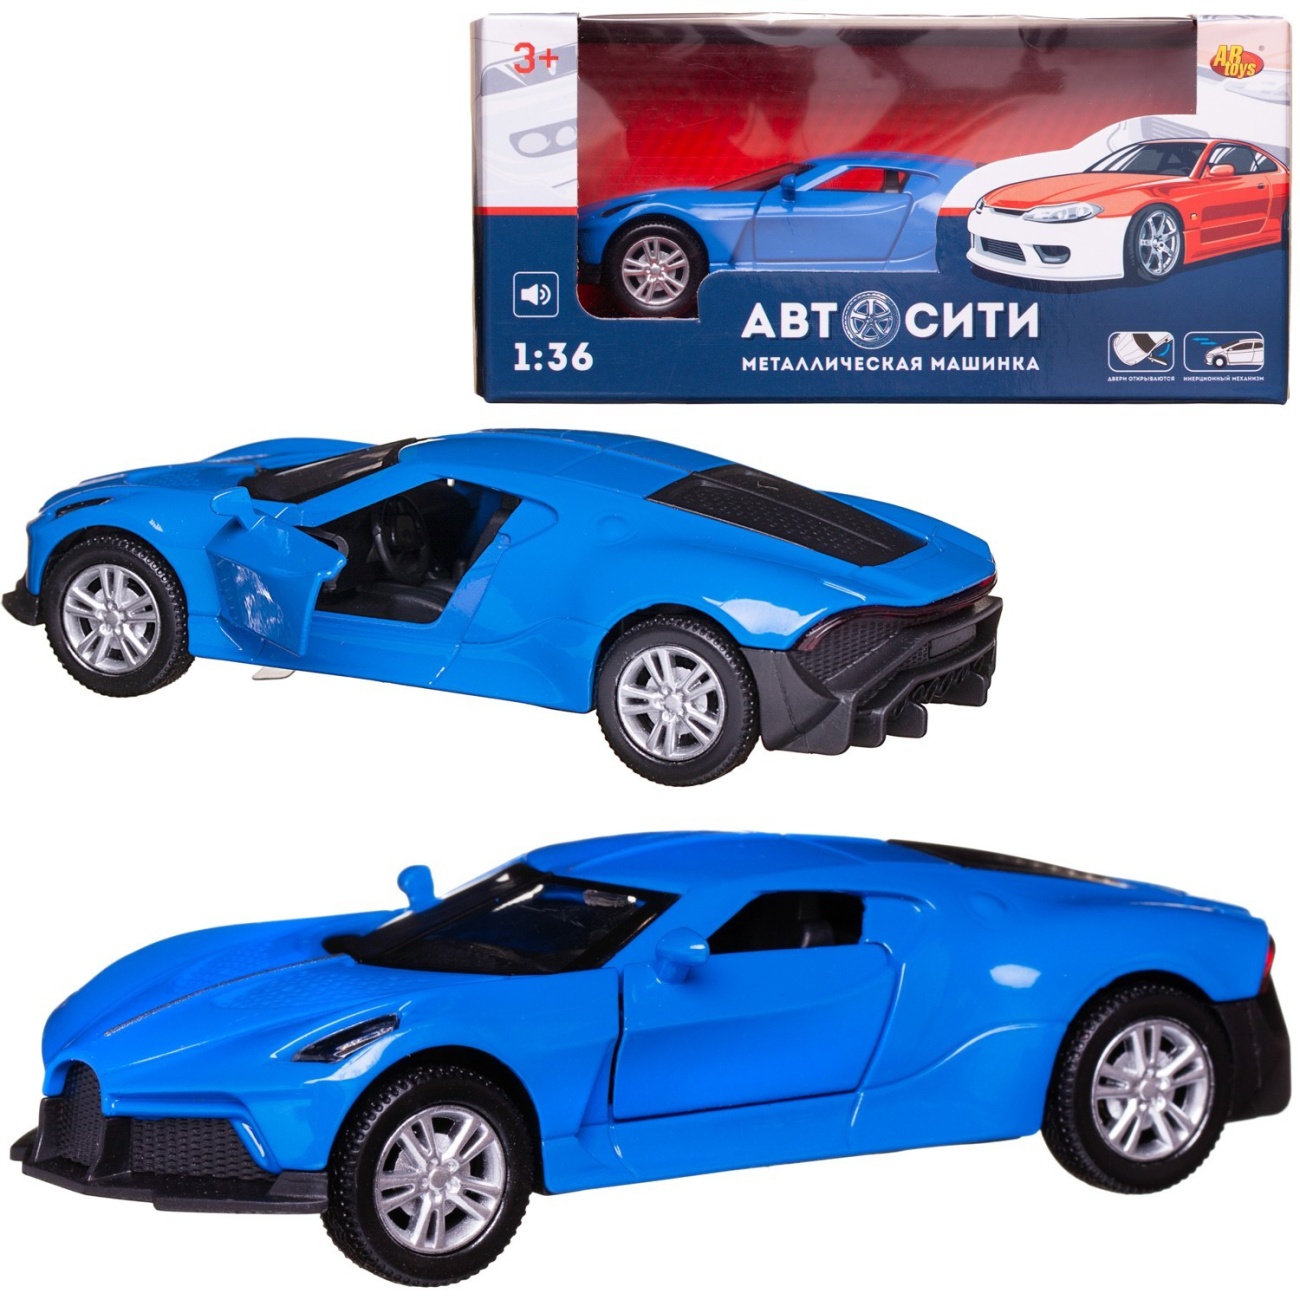 Машинка металл Abtoys АвтоСити 1:36 Спортивная инерция, двери откр.,синяя свет/звук C-00522/синяя